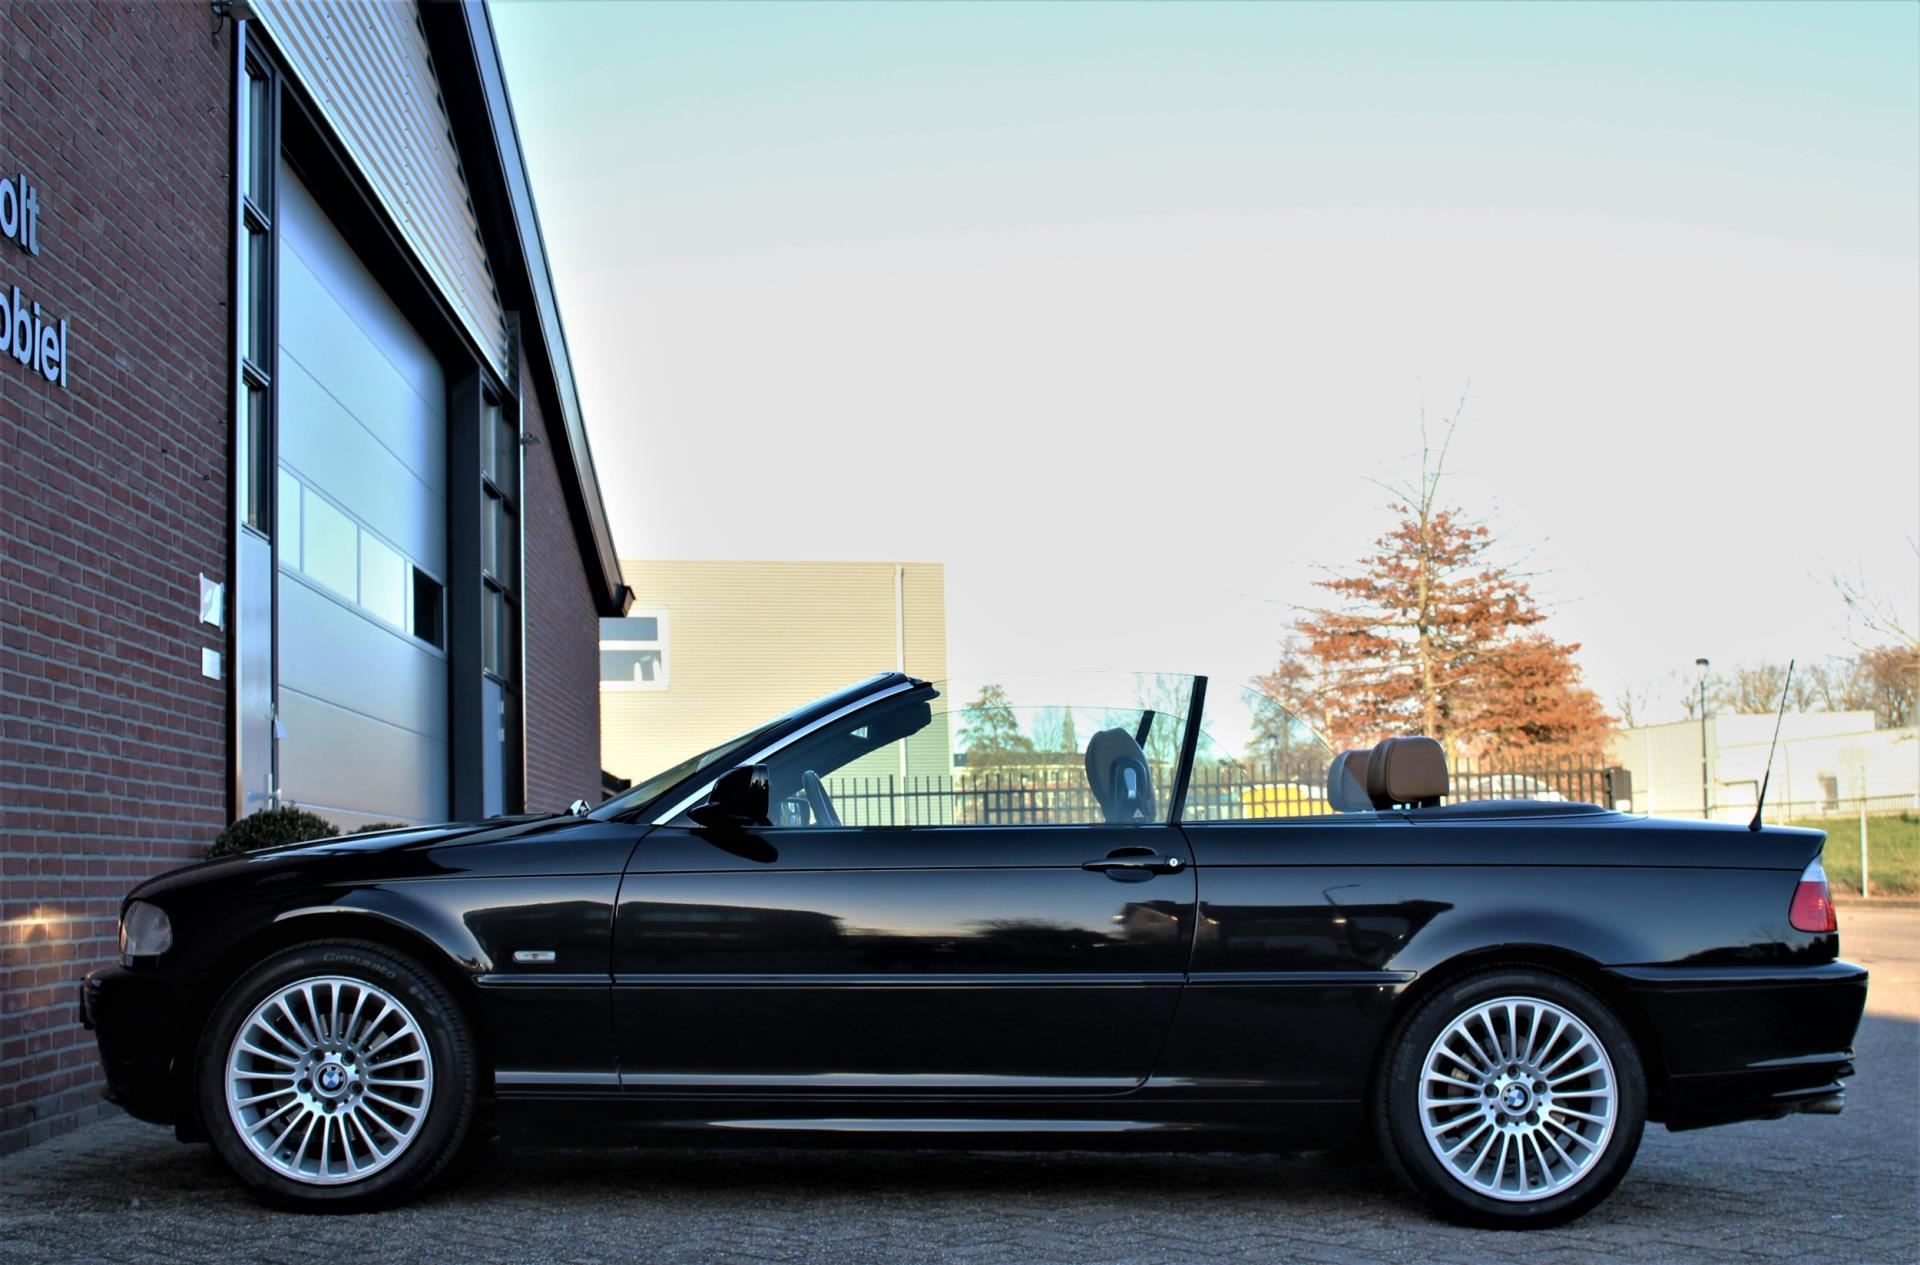 het ergste domesticeren Blokkeren BMW 3-serie Cabrio - 320Ci Executive, incl. EUR 2000,- onderhoud,  Sportstoelen, Harman Kardon, Hardtop, Youngtimer Benzine uit 2002 -  www.bookholt-automobiel.nl